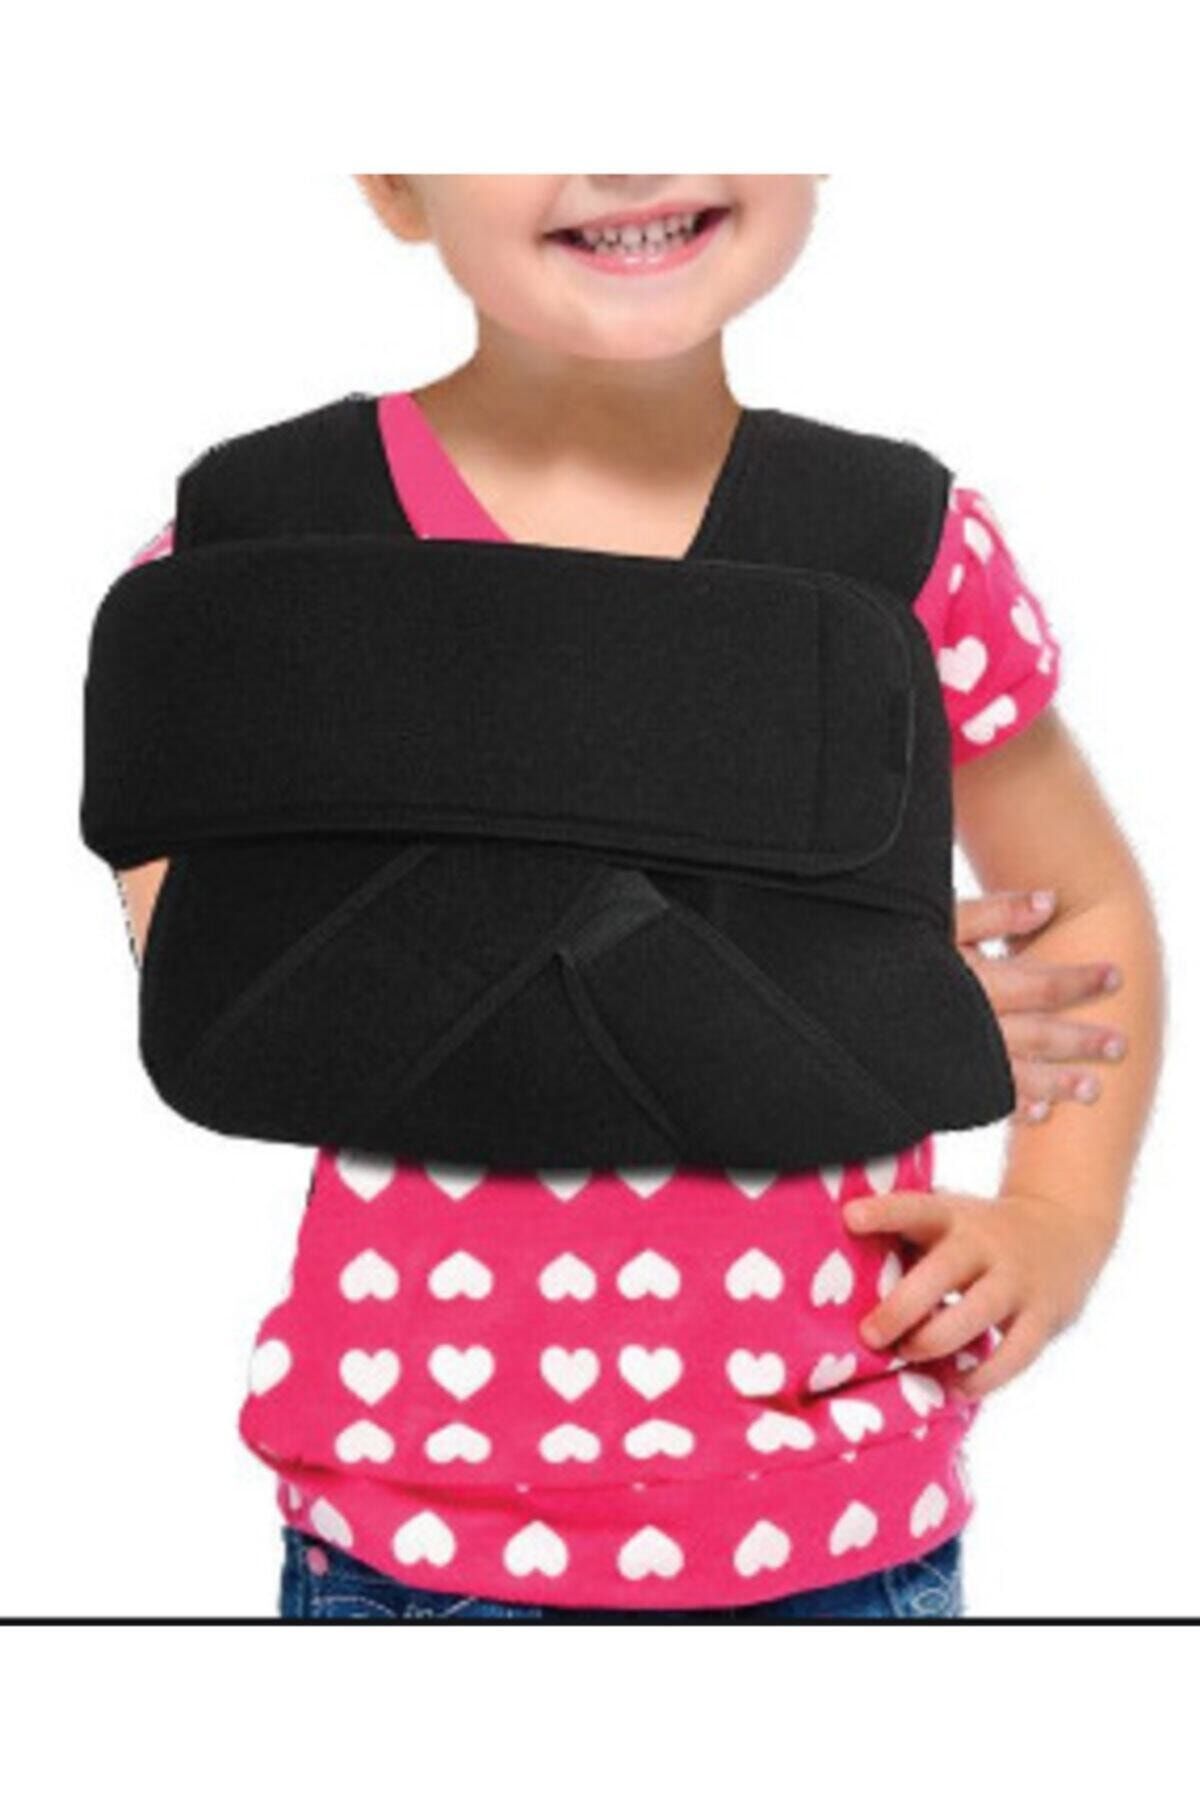 ankara medikal cocuk velpo bandaji omuz kol askisi omuz kirilmasi omuz bandaji omuz sabitleyici fiyati yorumlari trendyol